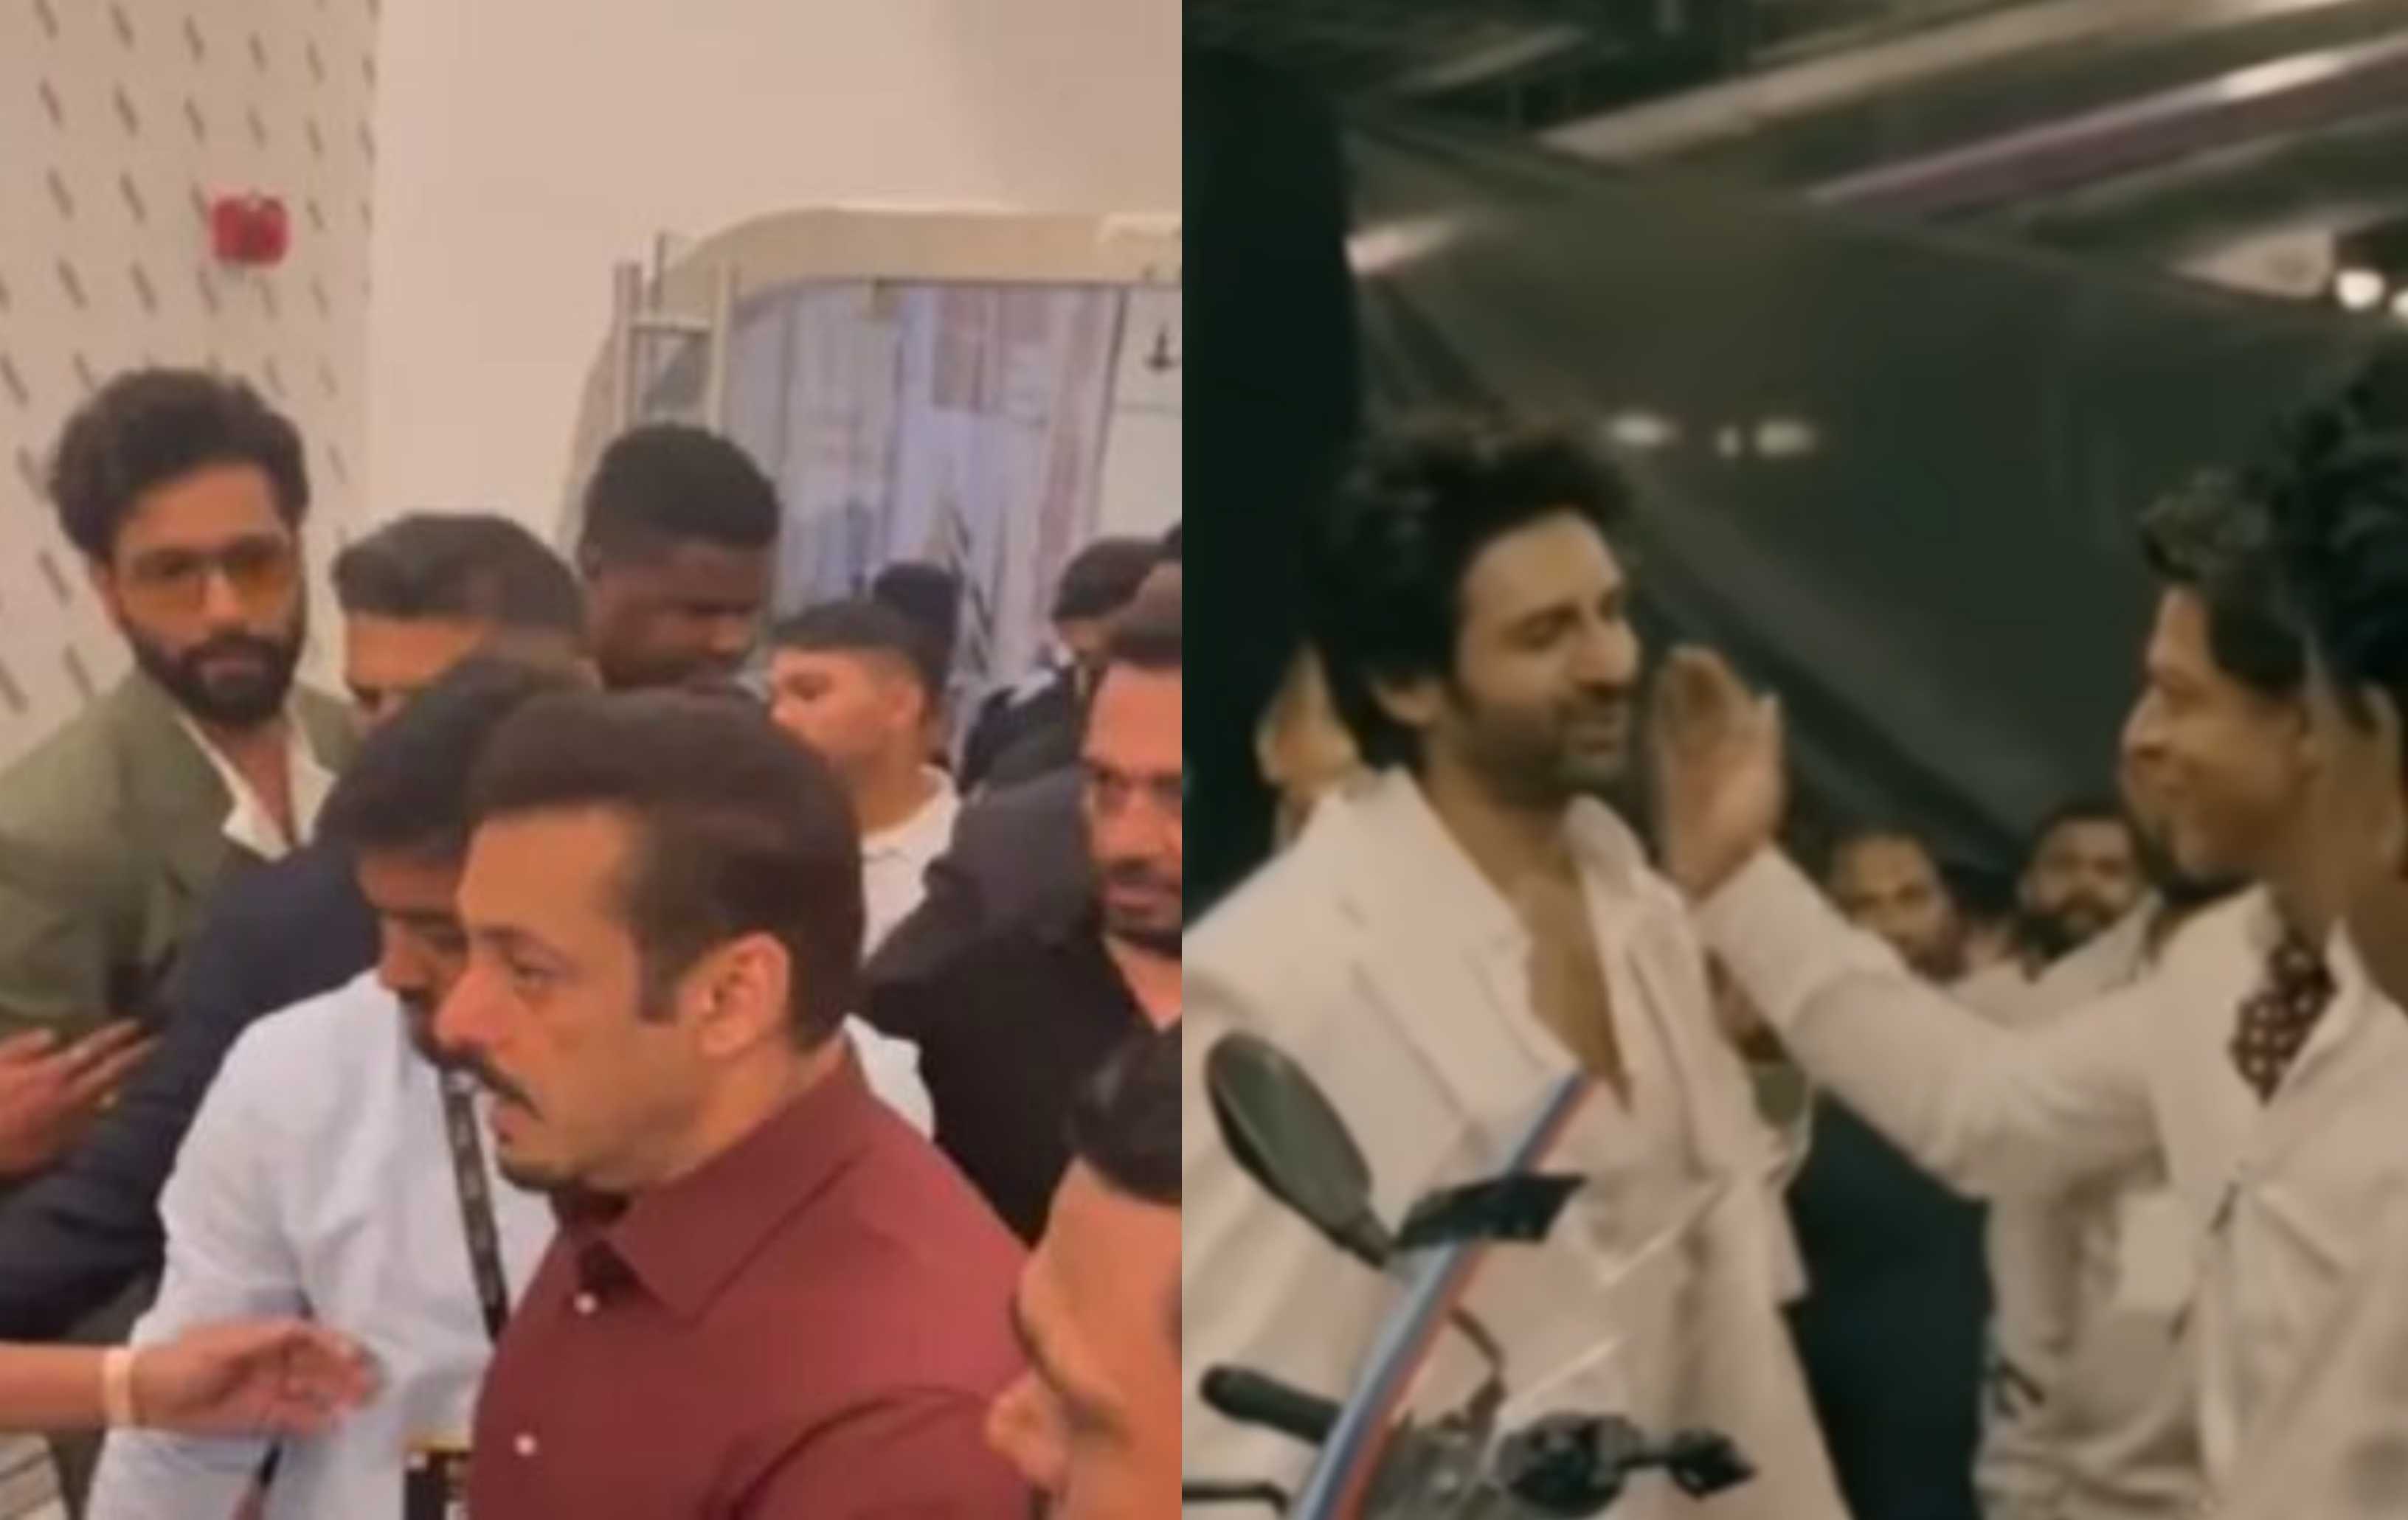 सलमान खान और शाहरुख़ में बड़ा अंतर इन दो वीडियो में, एक ने विक्की को इग्नोर किया तो दूसरे ने कार्तिक को लगाया गले